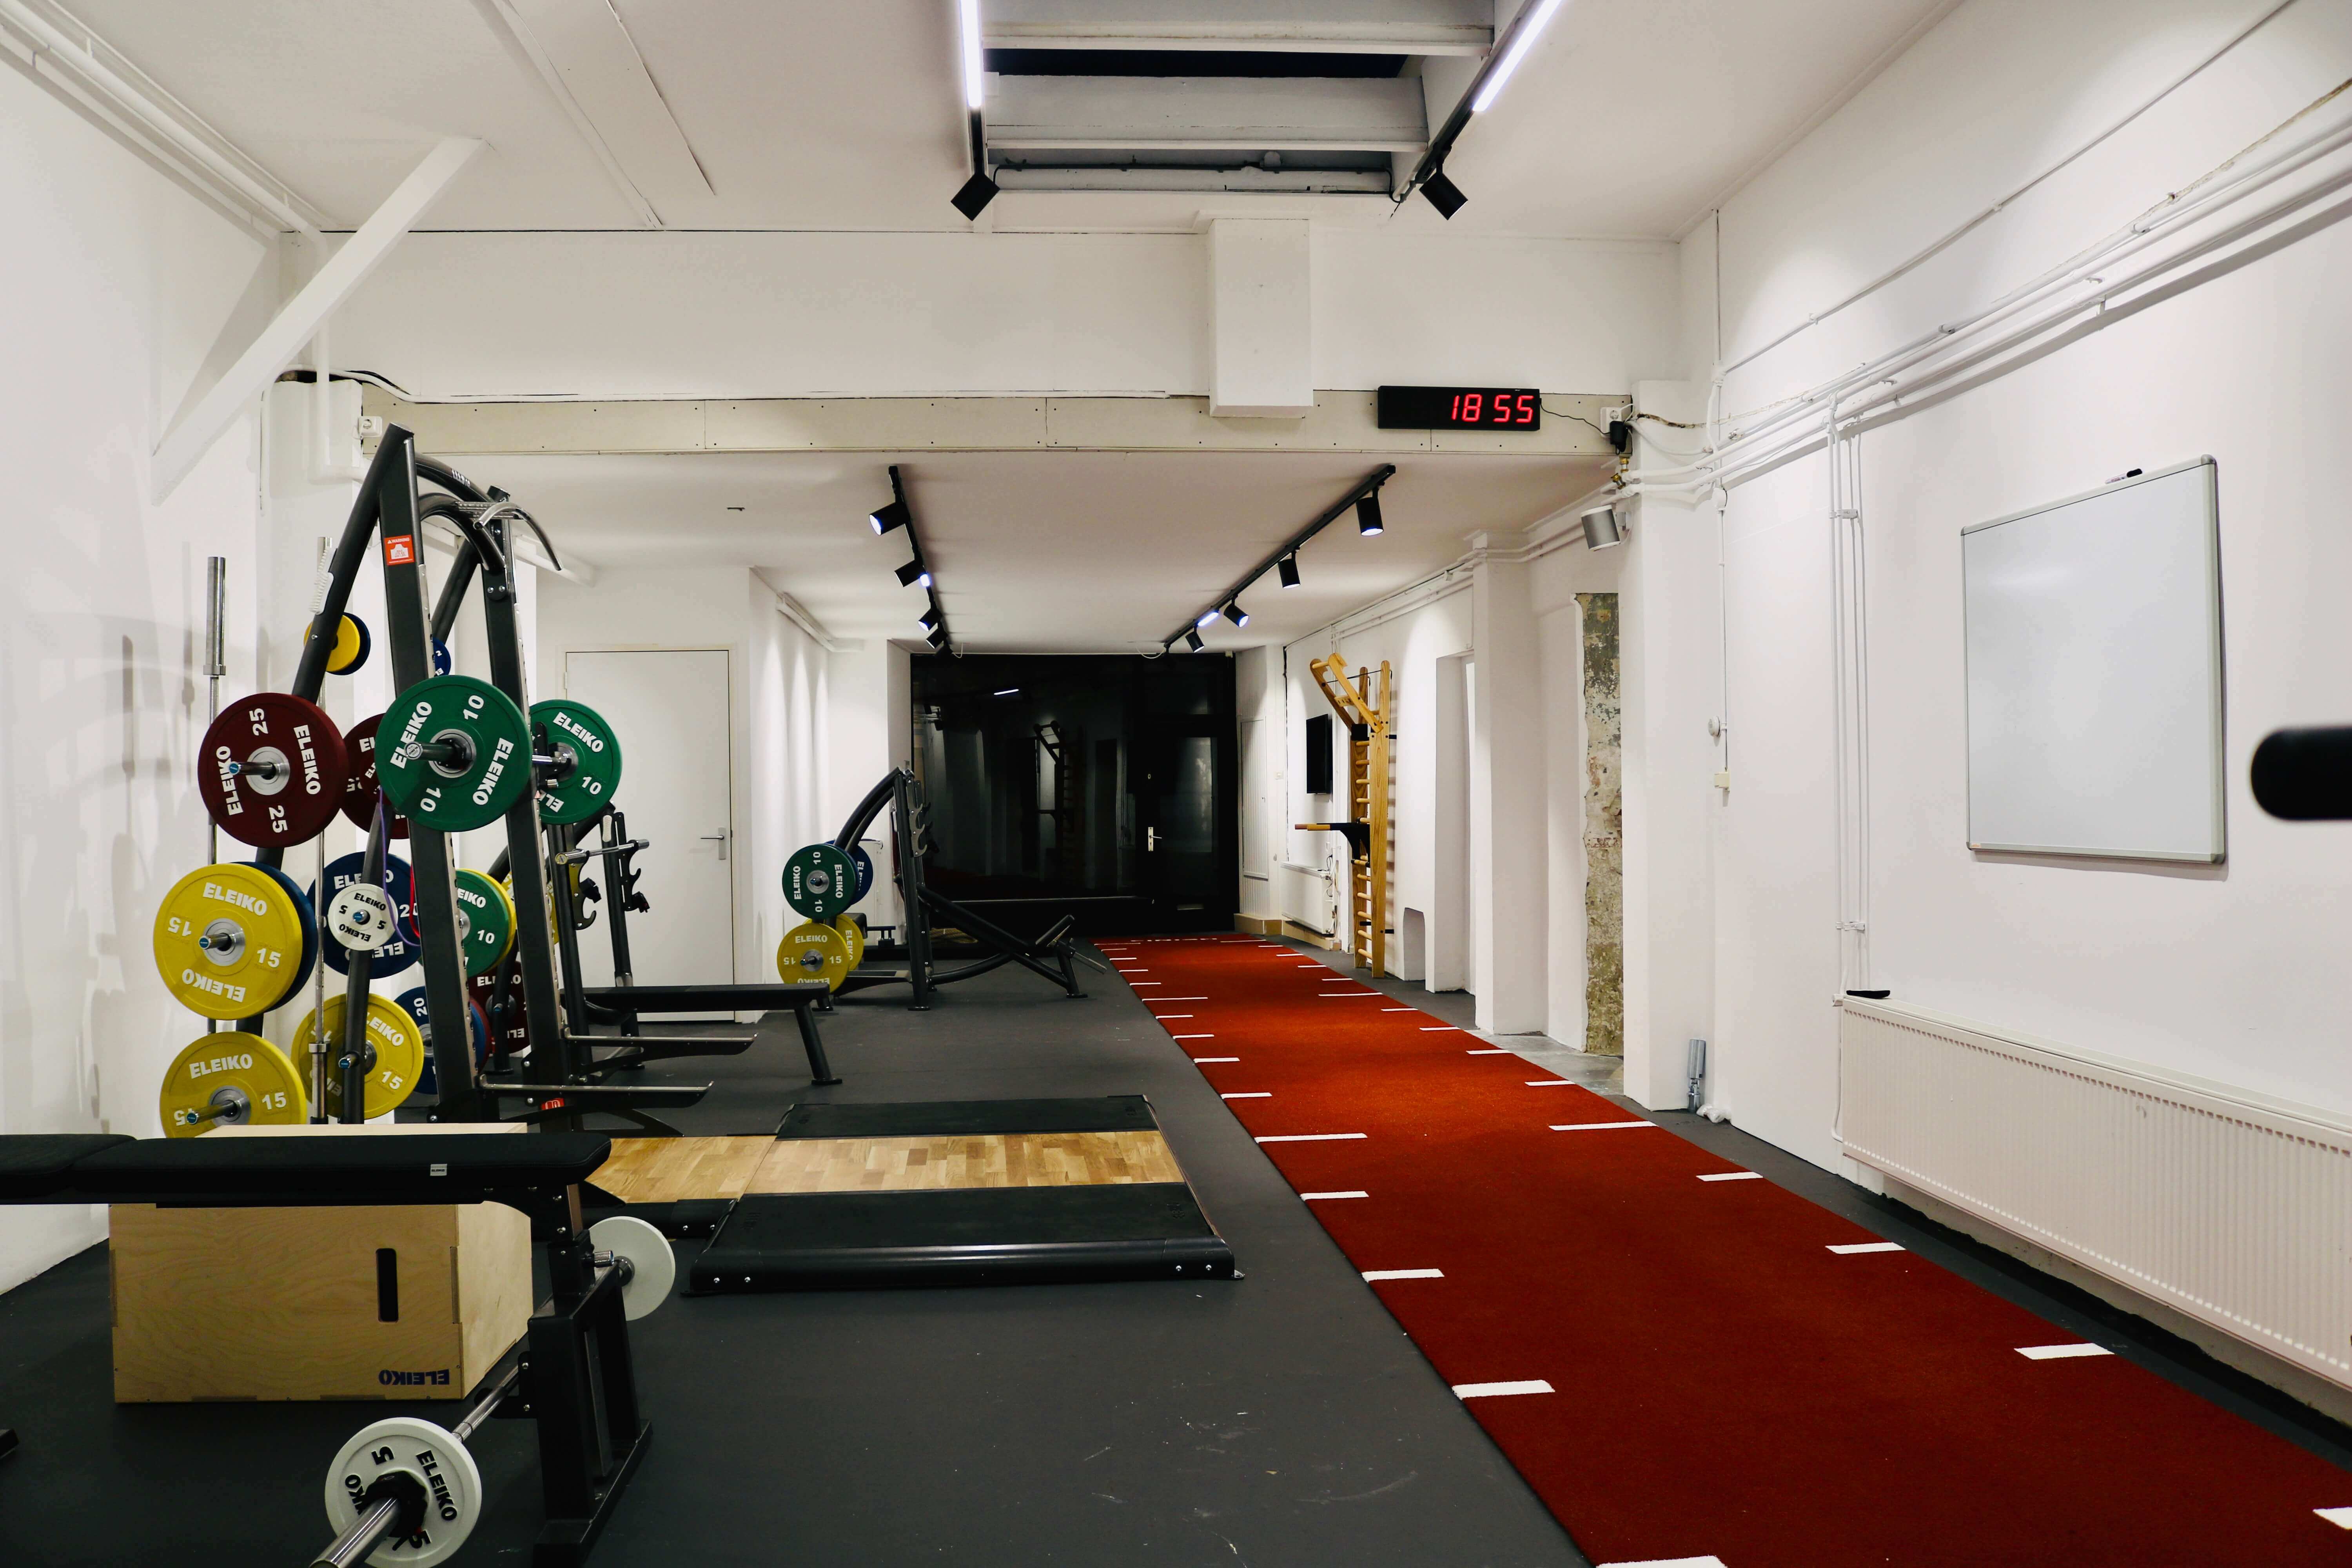 Les dalles pour sol de sport en intérieur : salle de sport, fitness